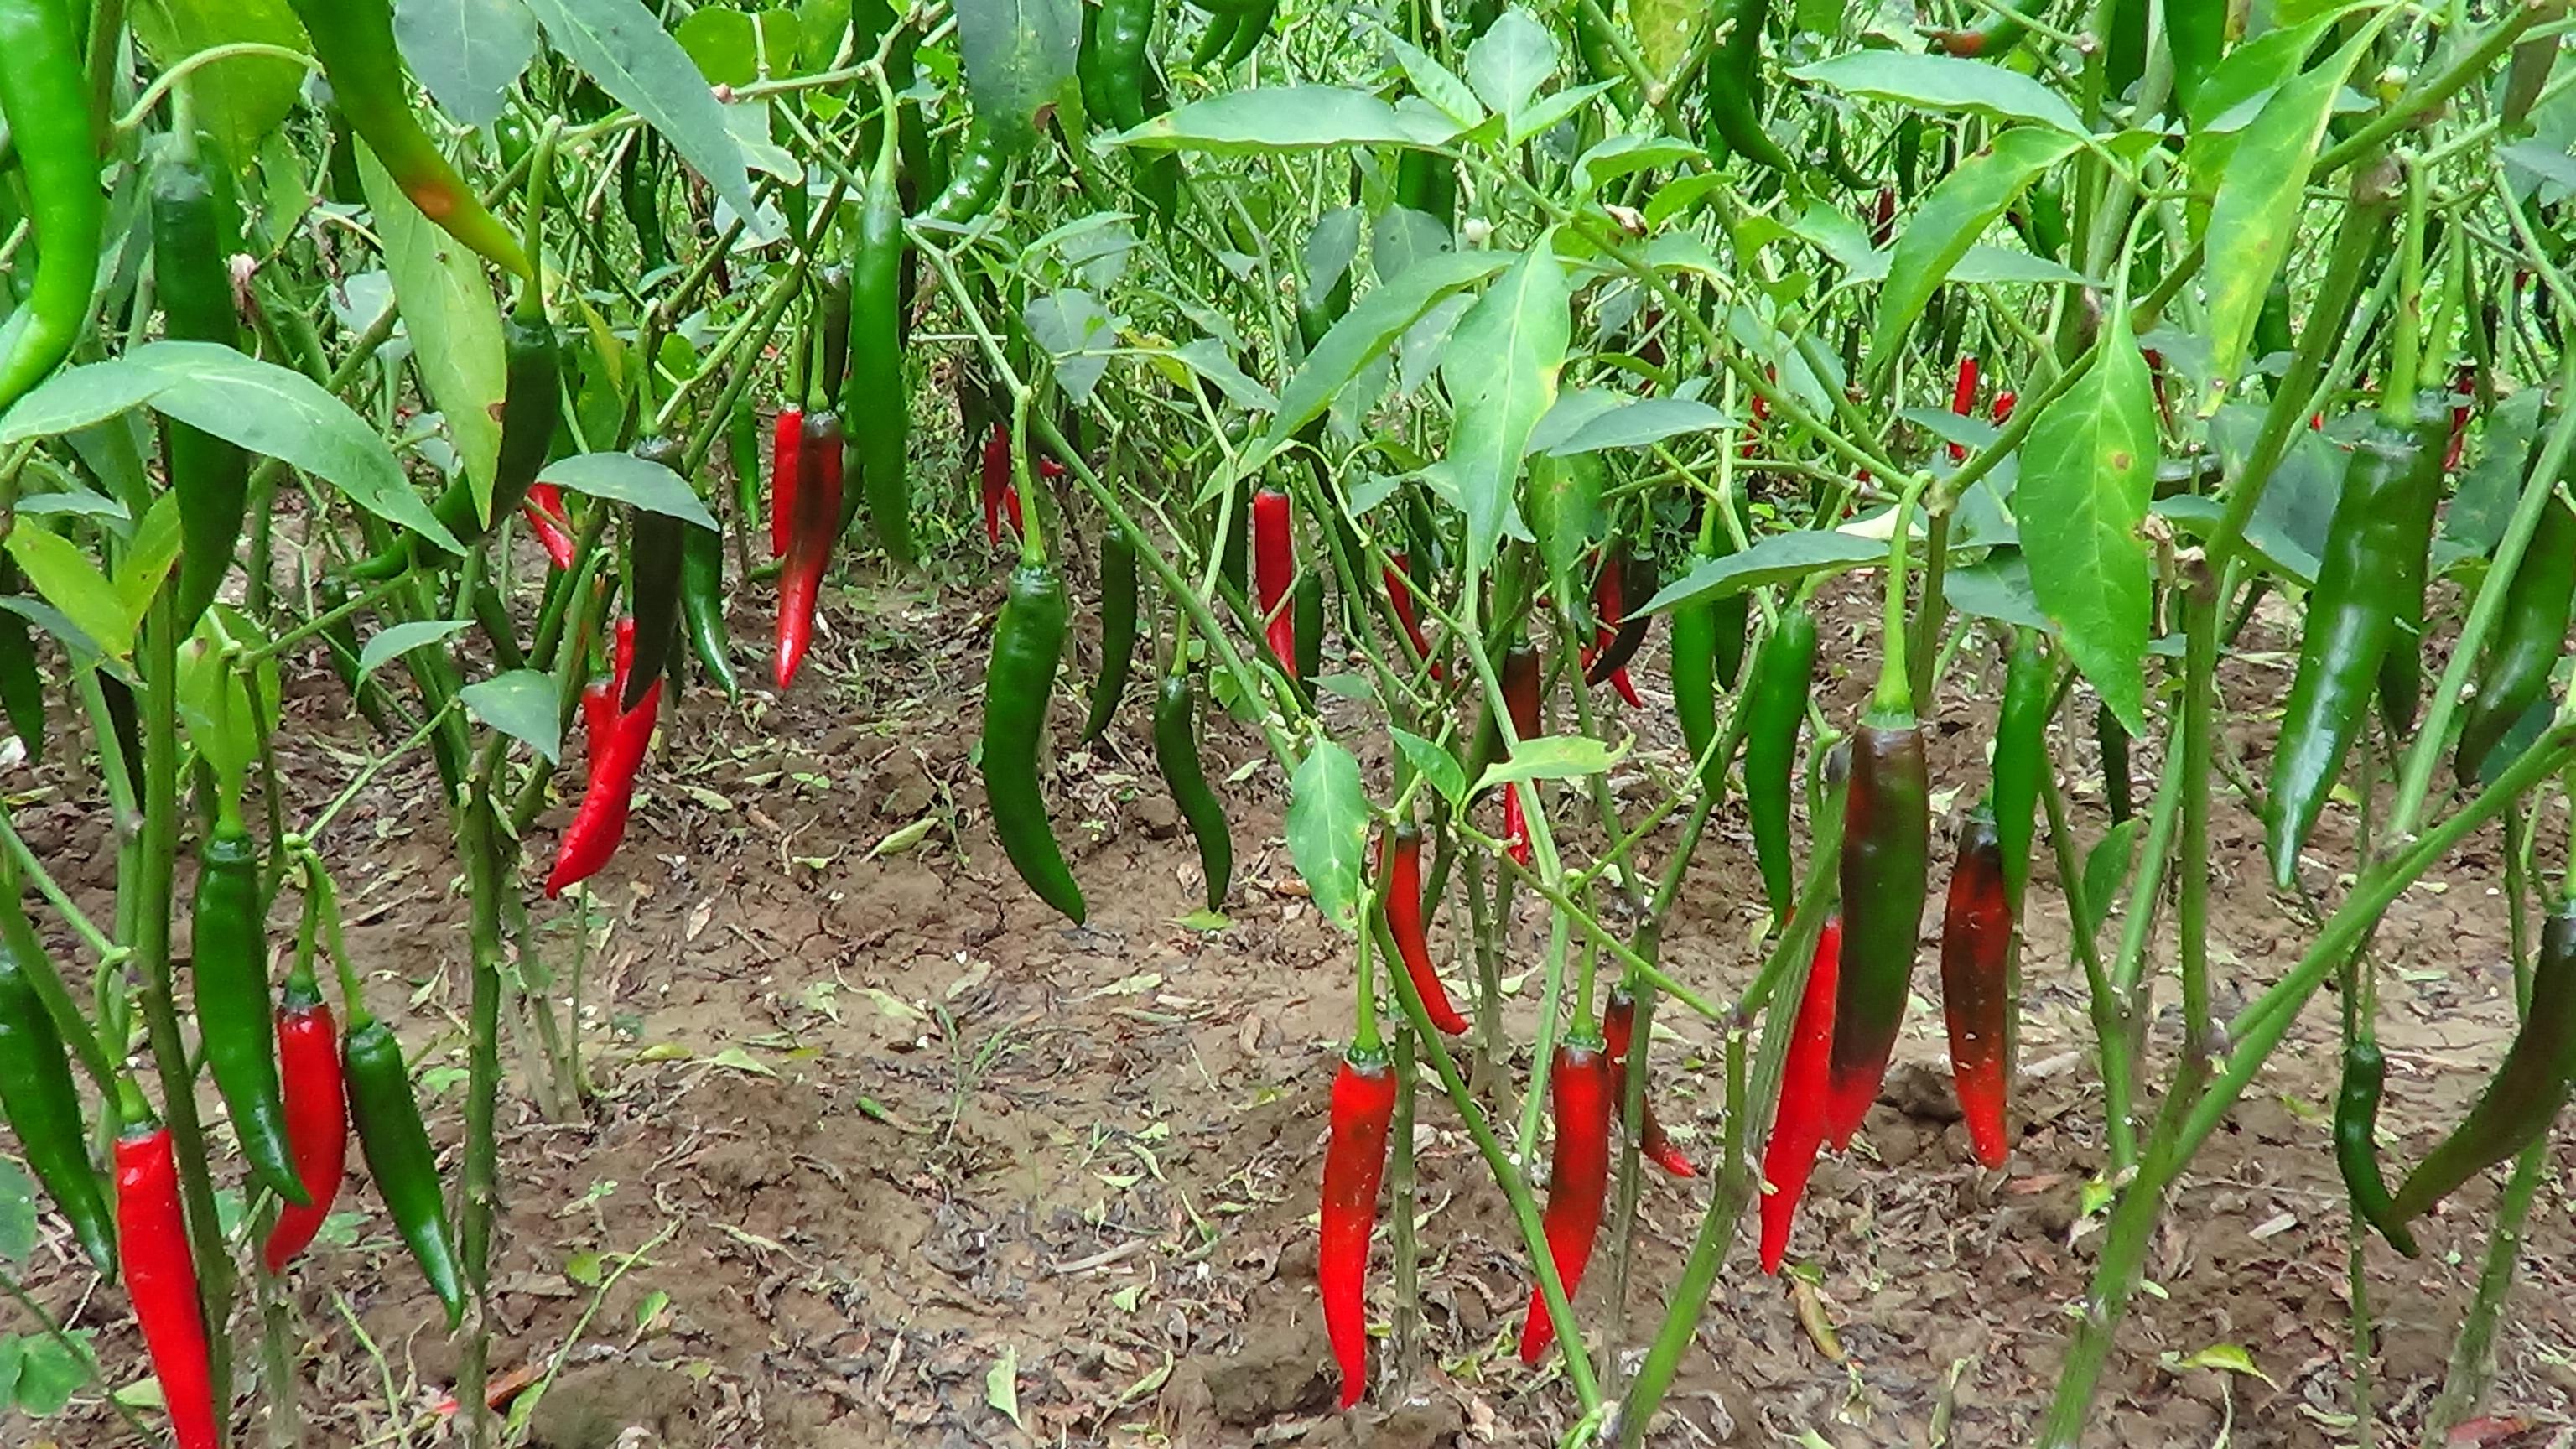 để tăng năng suất cây ớt, ngoài các yếu tố như giống, thời tiết khi hậu…, nhà nông cần nắm vững kỹ thuật bón phân